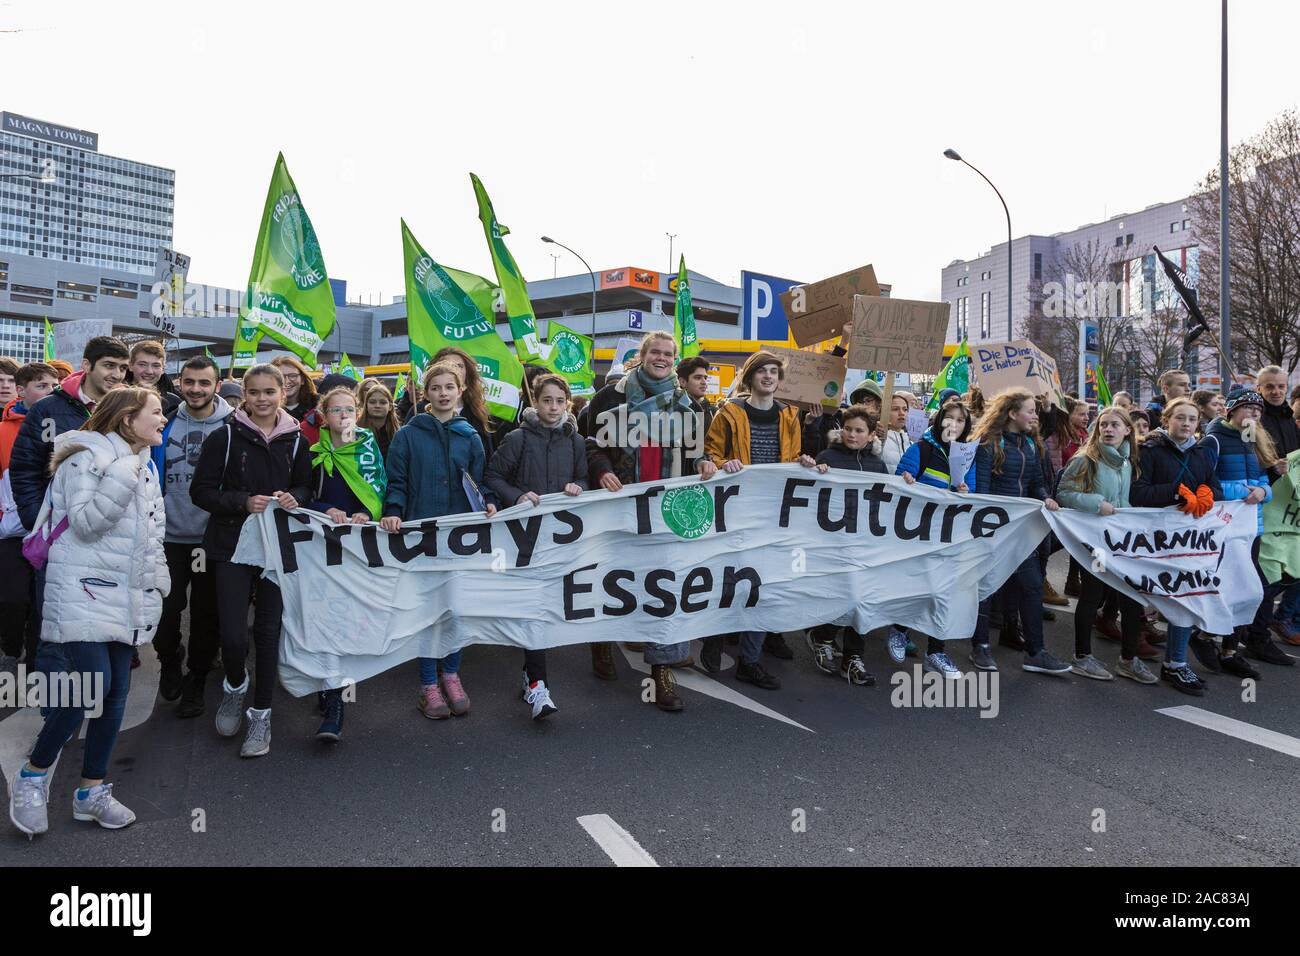 Gli alunni e gli studenti prendono parte al venerdì per la futura manifestazione a Essen, Germania Foto Stock